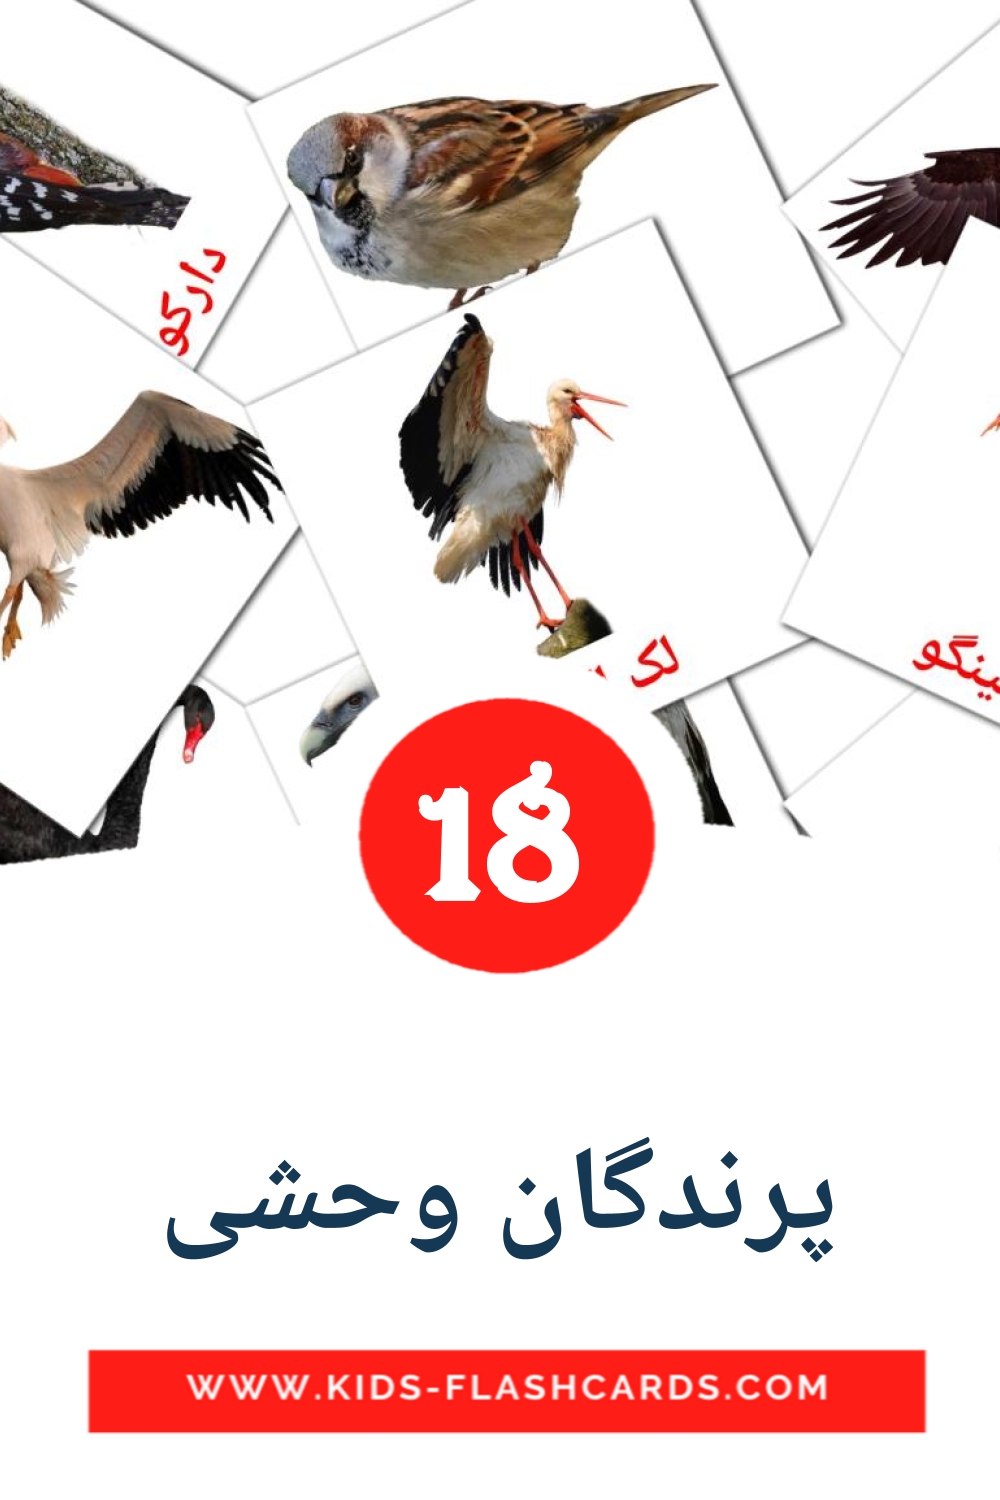 18 پرندگان وحشی fotokaarten voor kleuters in het perzisch